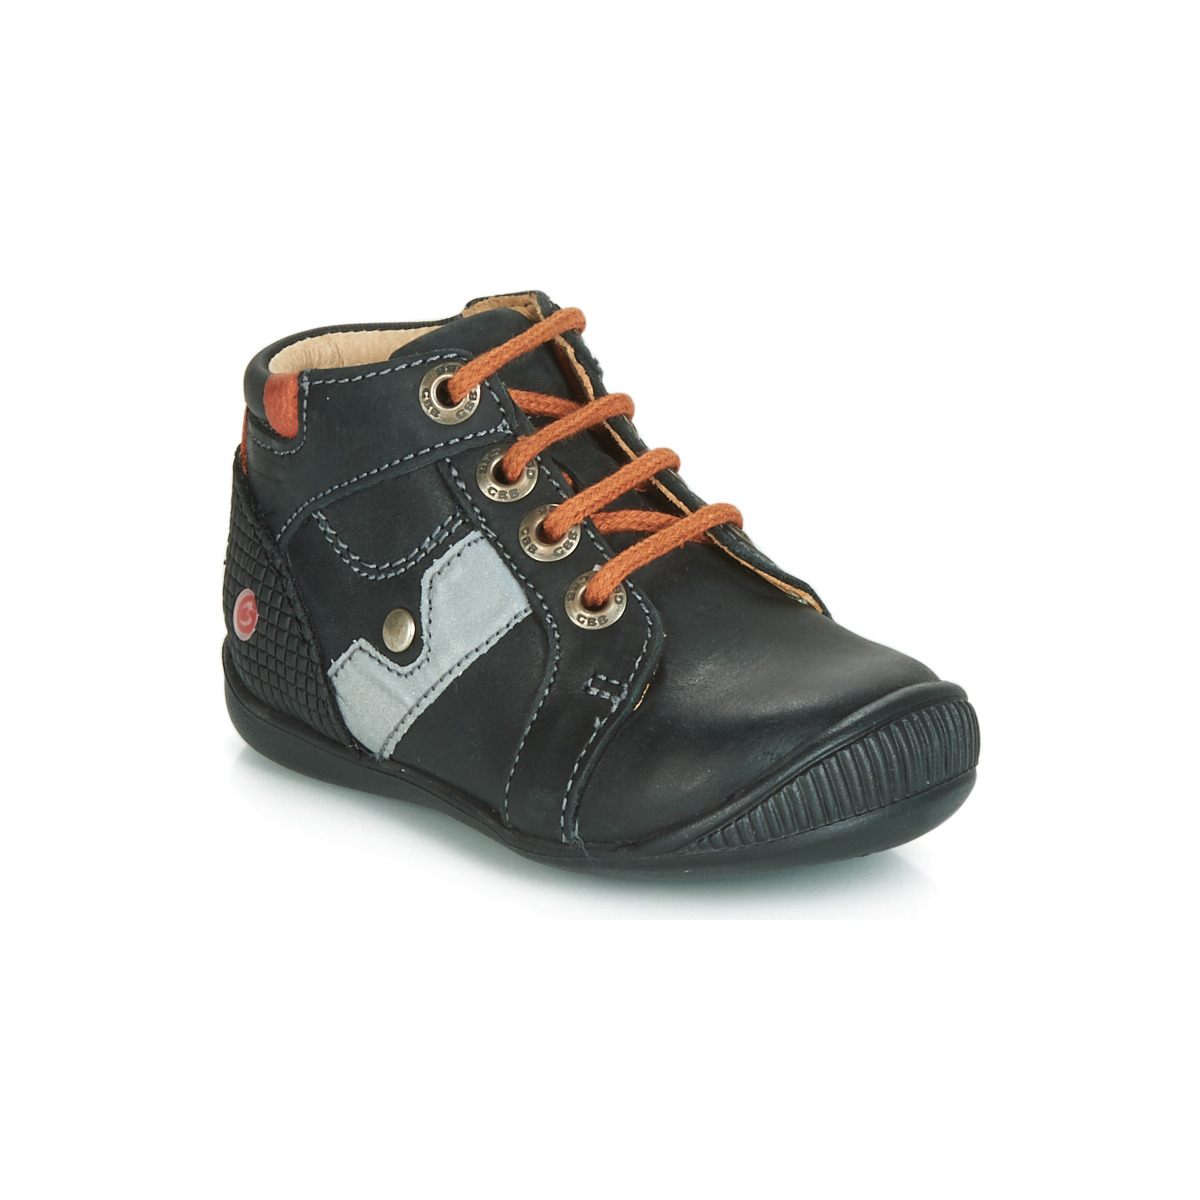 Schoenen Jongens Hoge sneakers GBB REGIS Zwart / Oranje